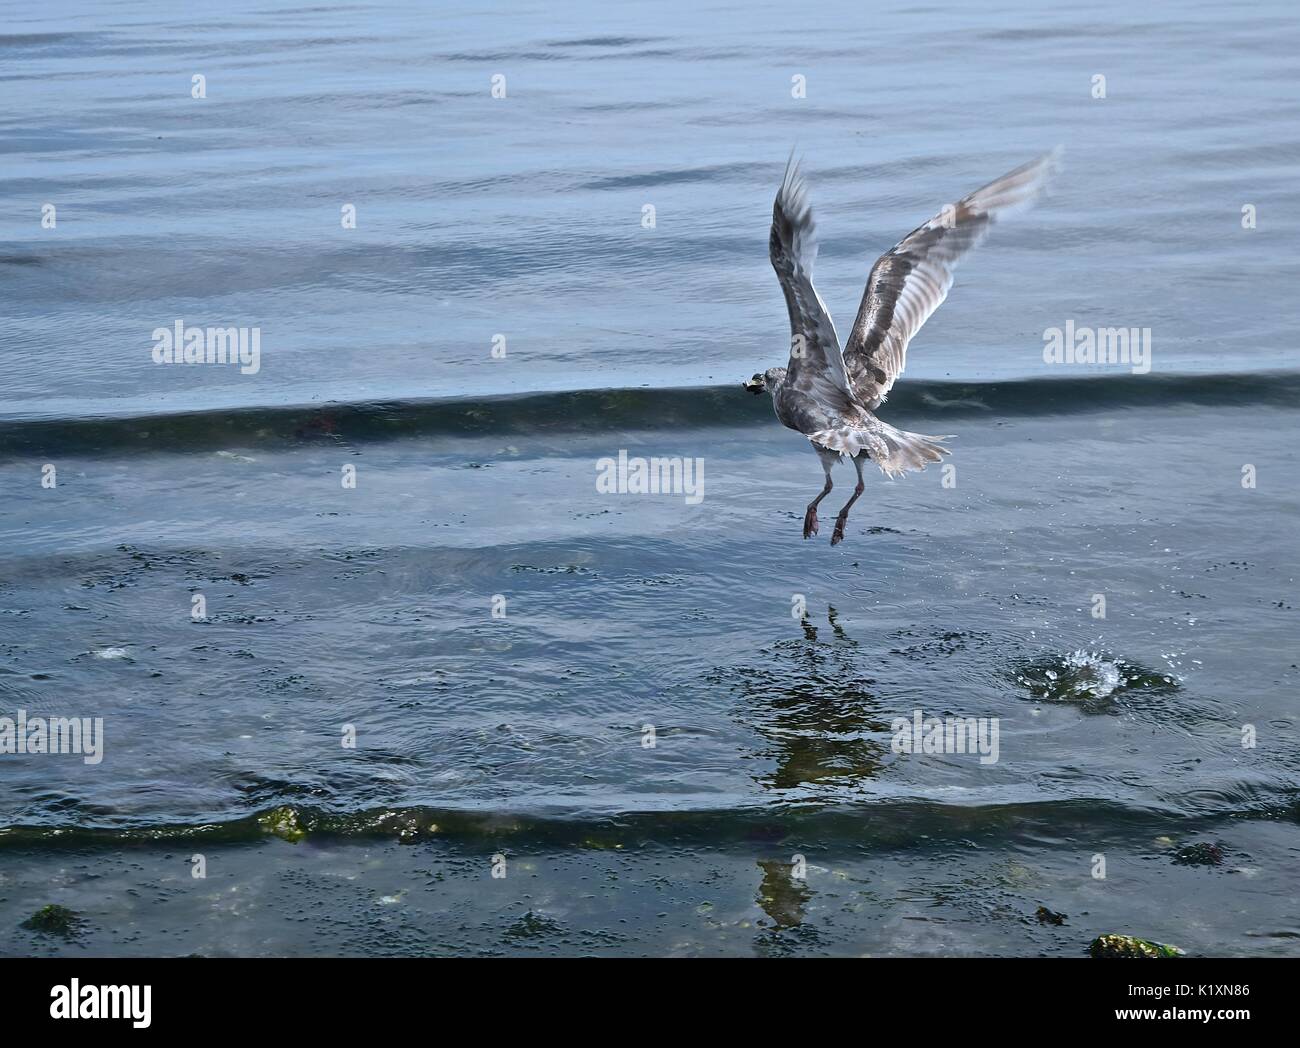 La bassa marea sul Puget Sound rivela molte creature del mare rendendo il pasto successivo per un sea gull un elevata possibilità. Foto Stock